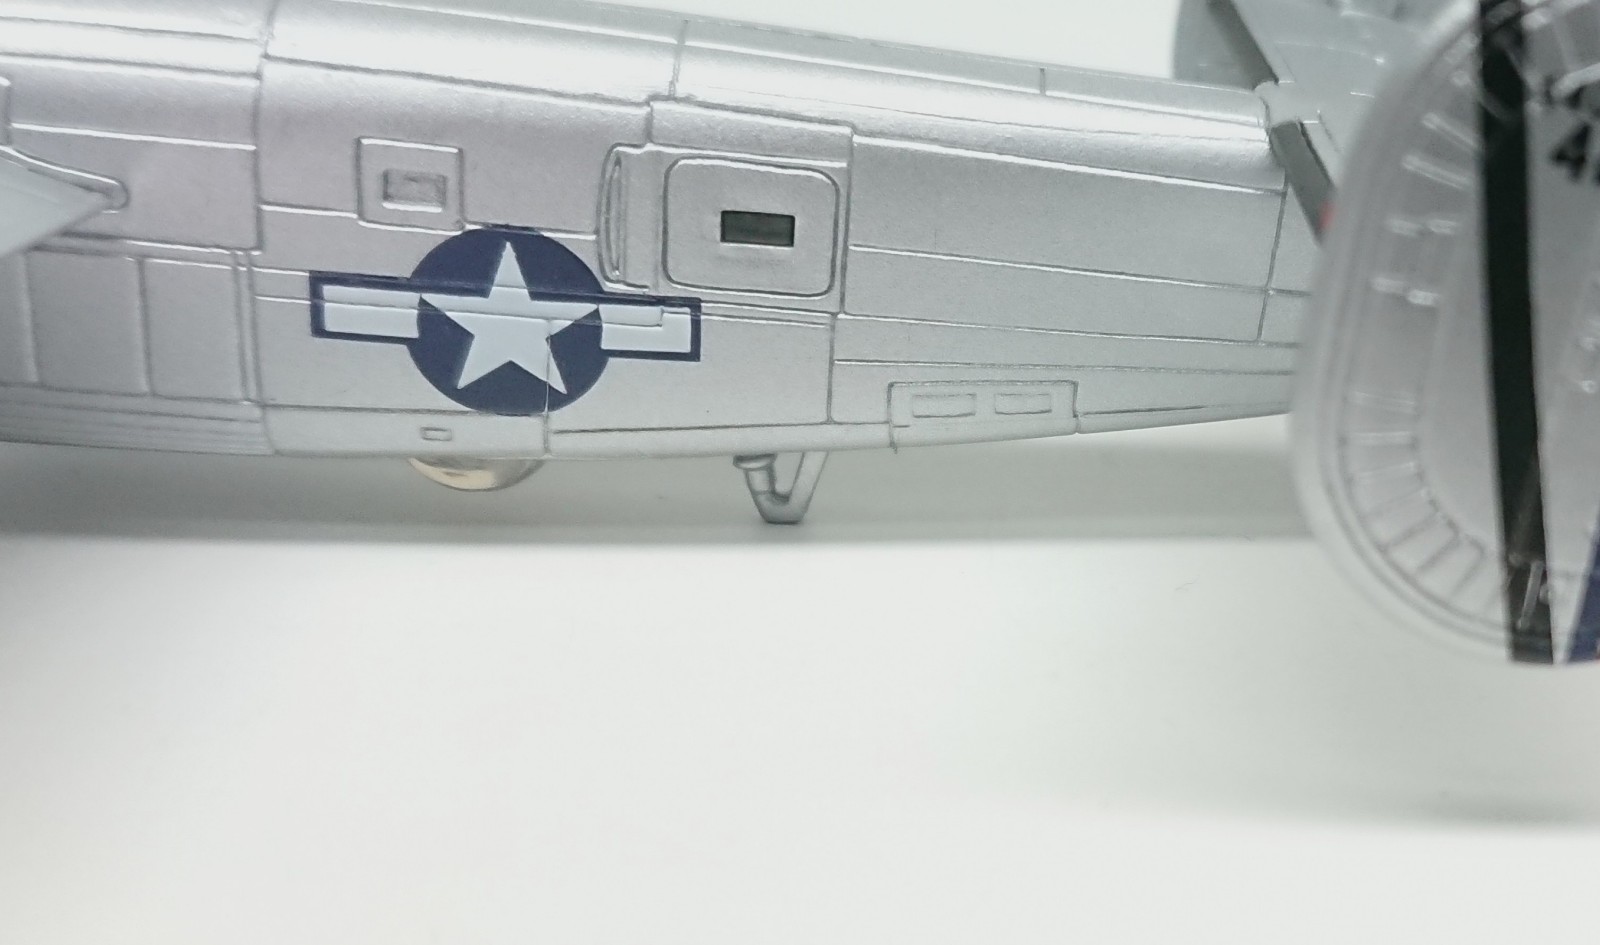 塗装済み】1/144 B-24J リベレーターを製作レビュー【ビッグバード vol 